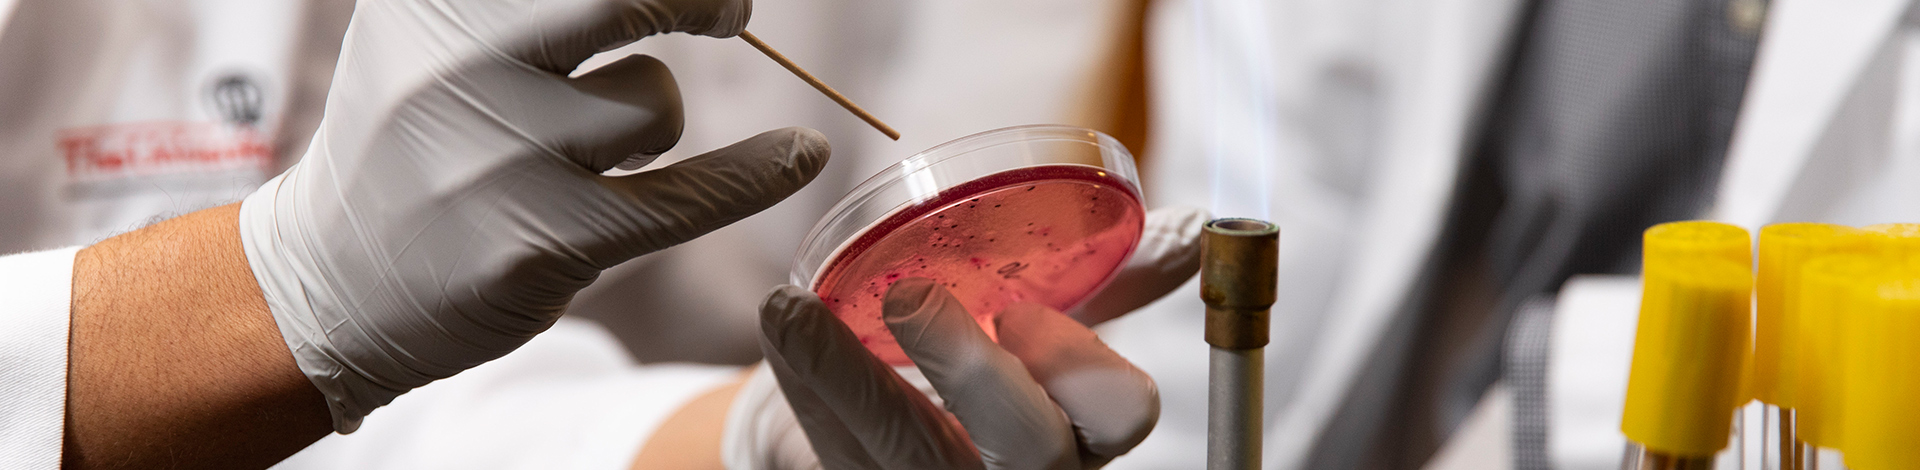 scientist placing specimen into petri dish